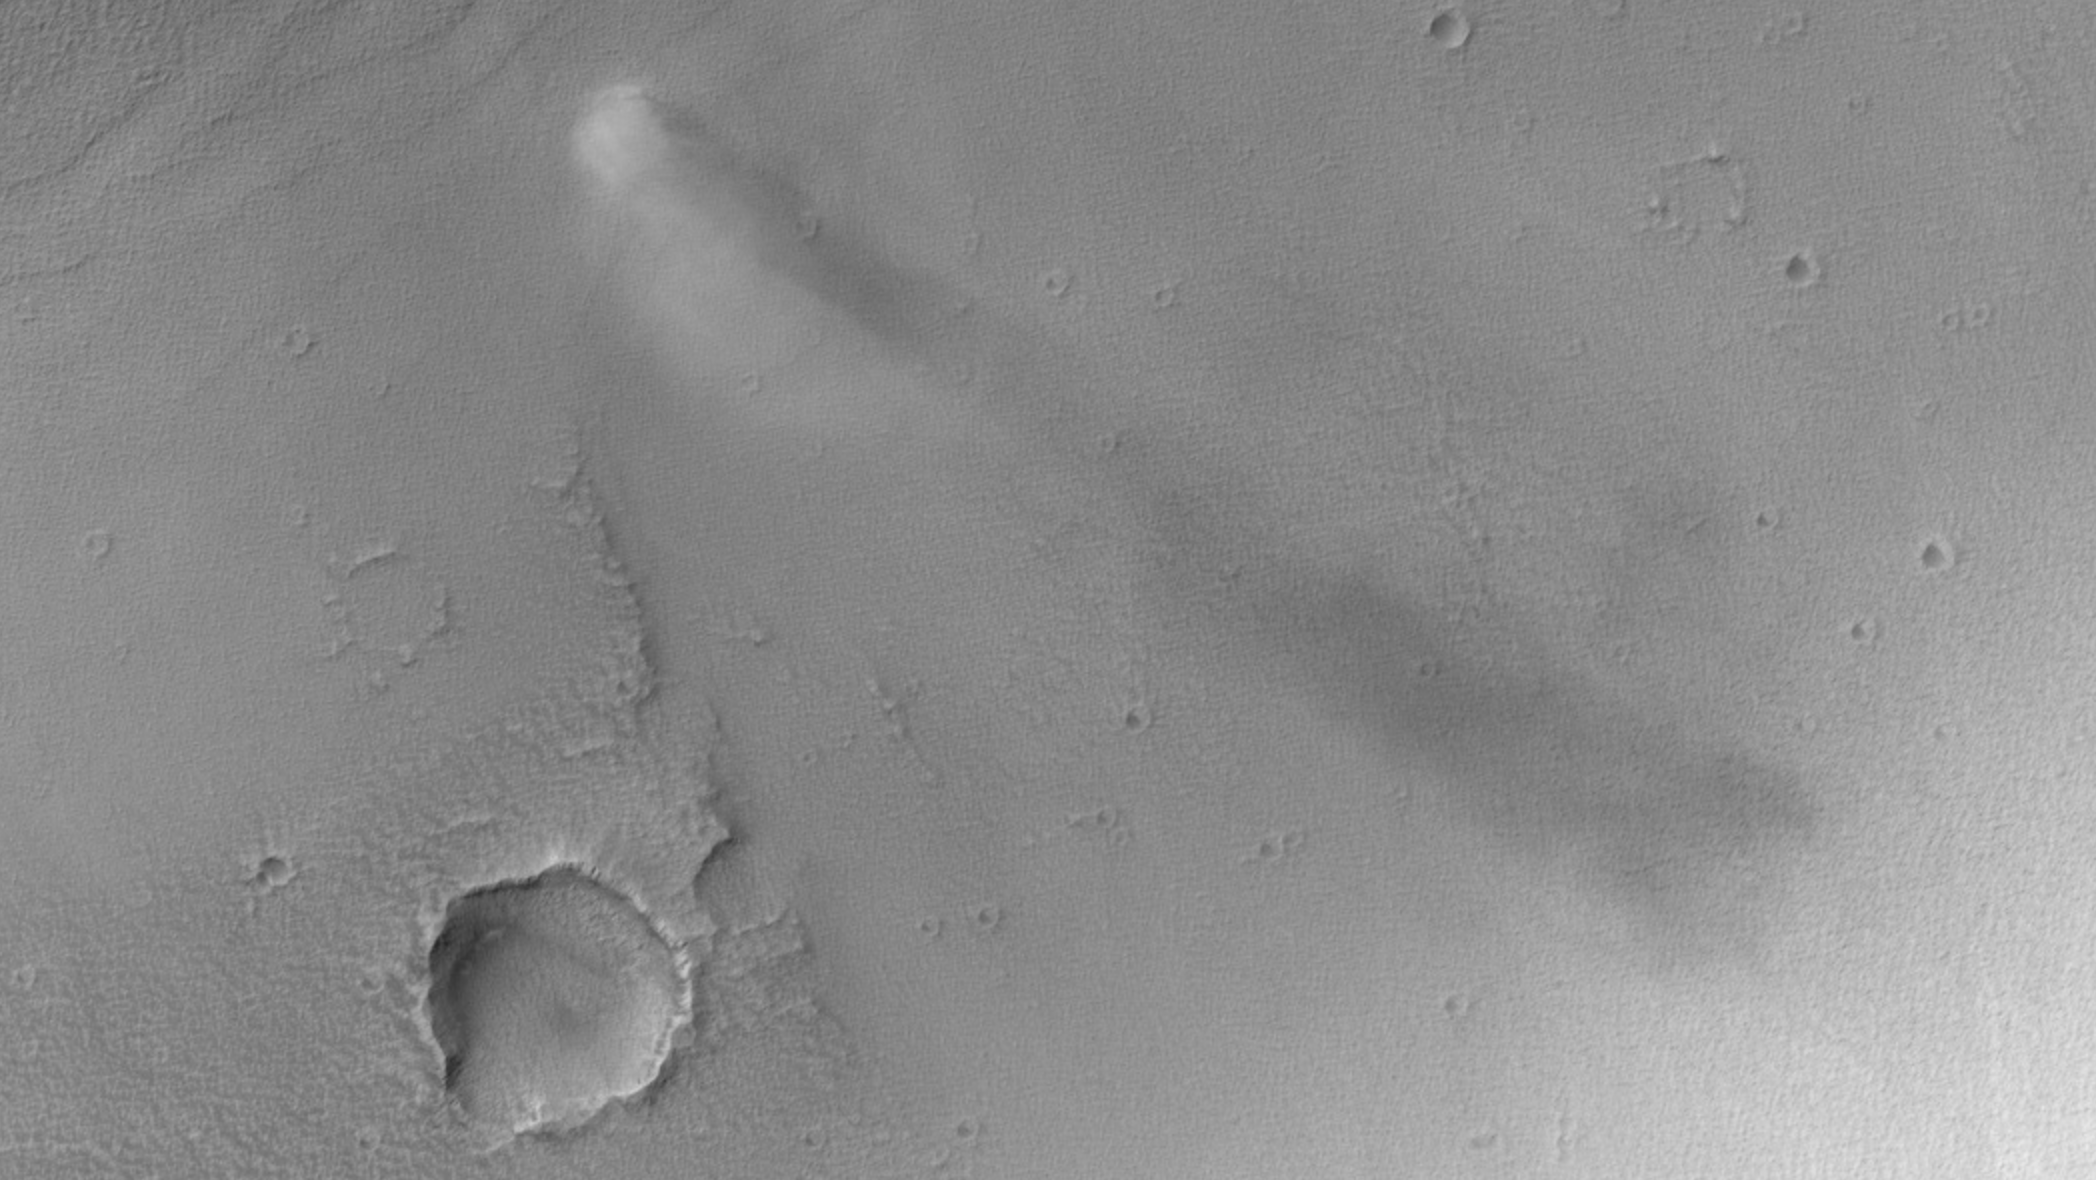 Марсианская камера НАСА HiRISE запечатлела пылевого дьявола в действии